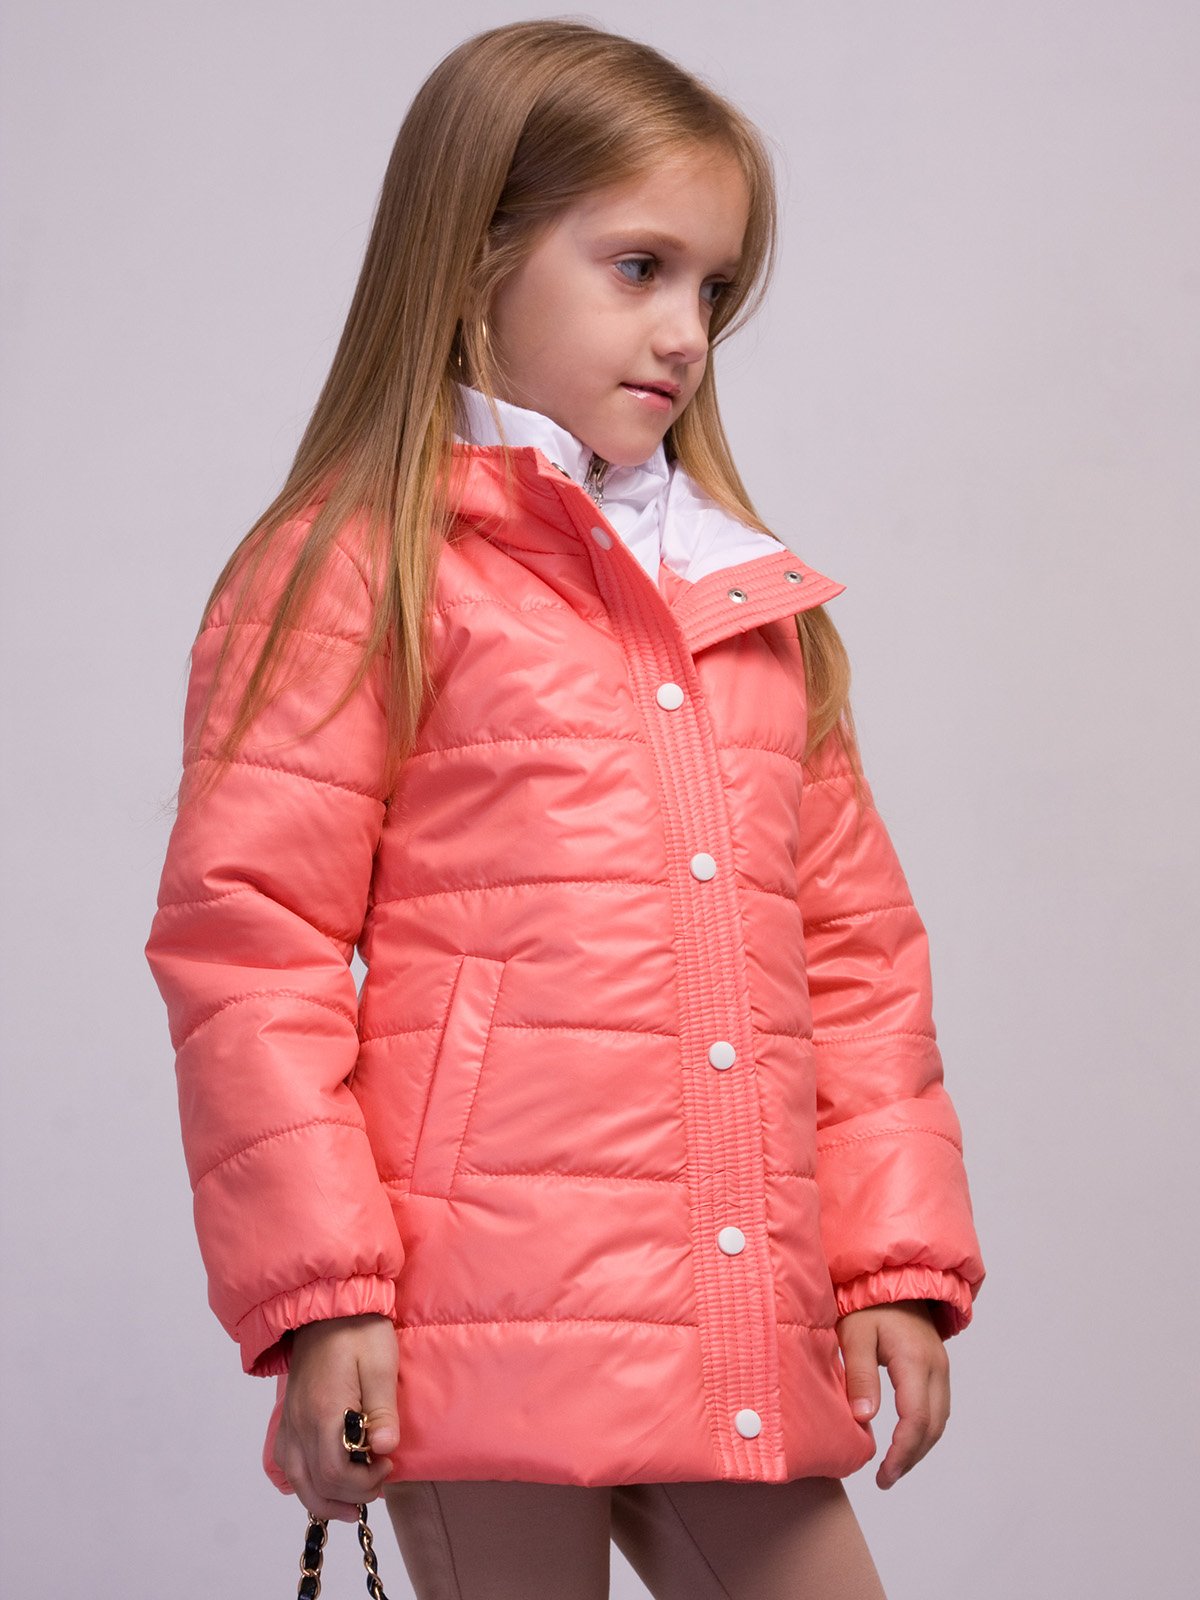 Девочка в розовой куртке